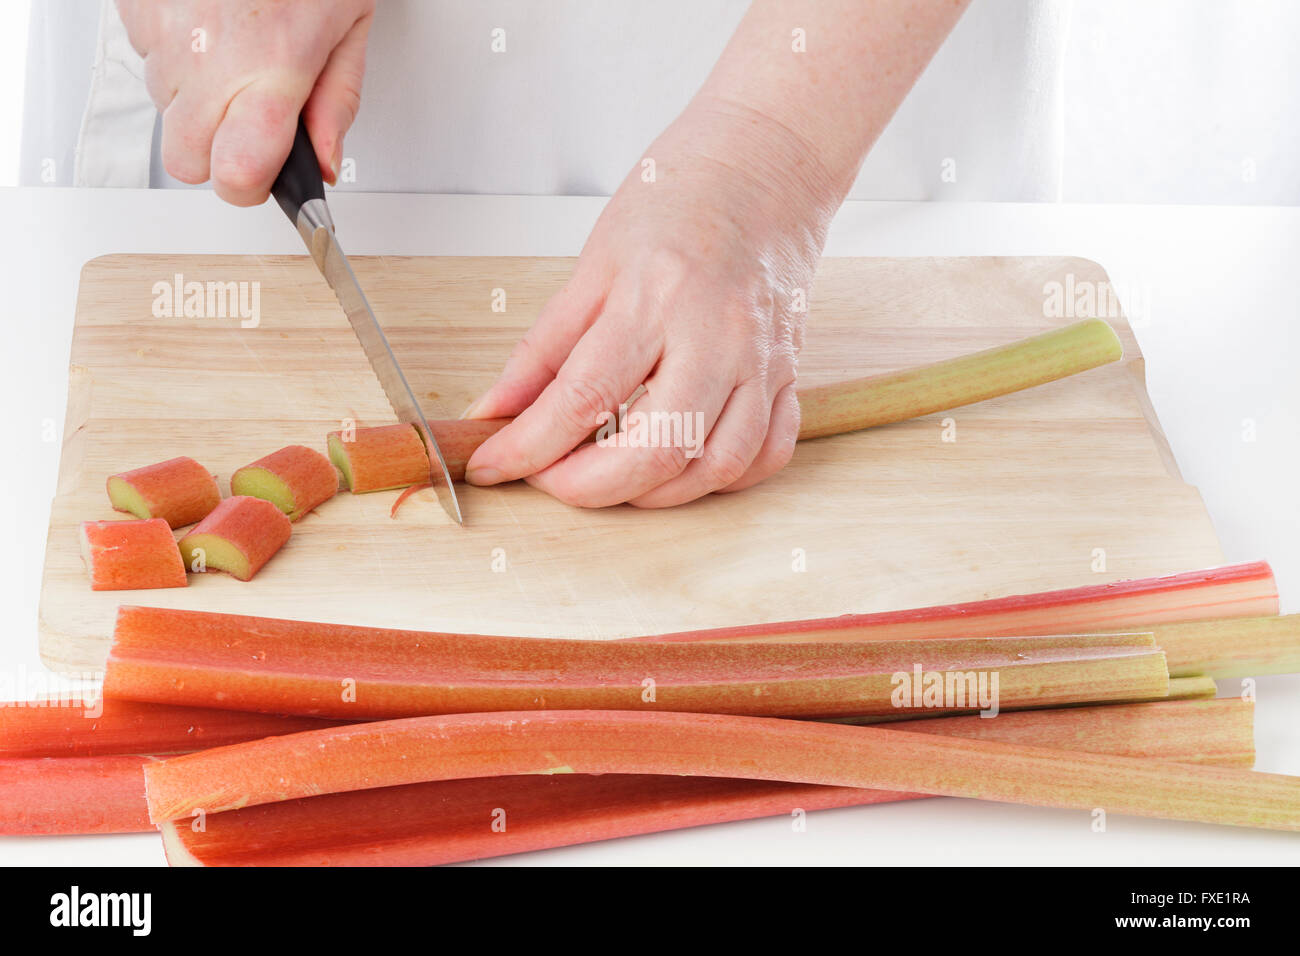 La rhubarbe couper les mains dans la cuisine Banque D'Images